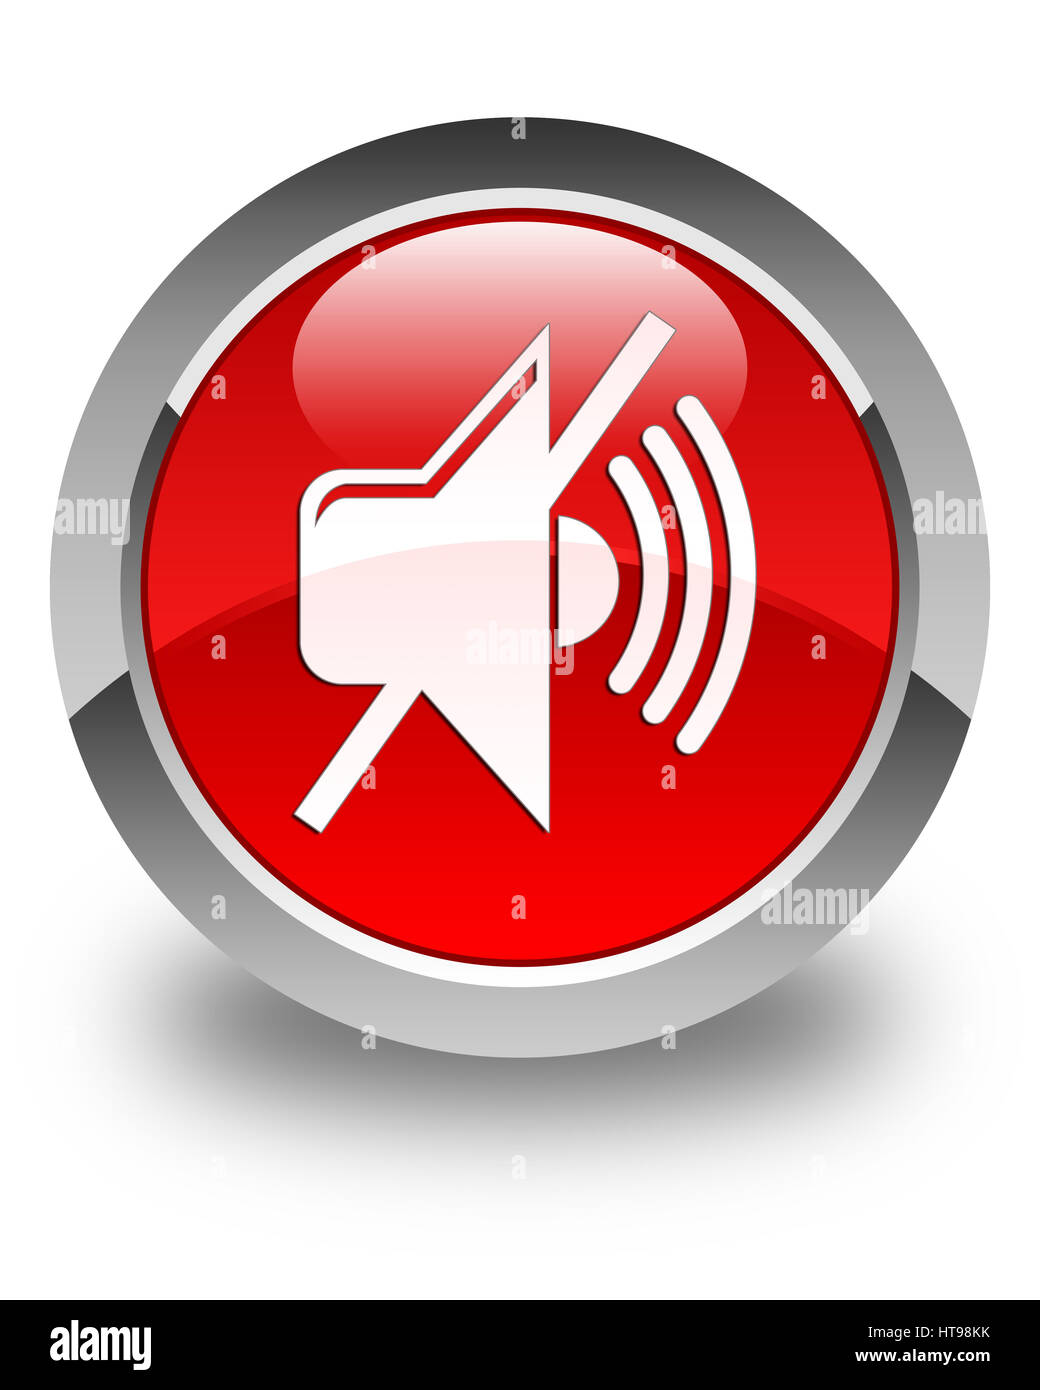 L'icône de volume Mute isolé sur le bouton rond rouge brillant abstract illustration Banque D'Images